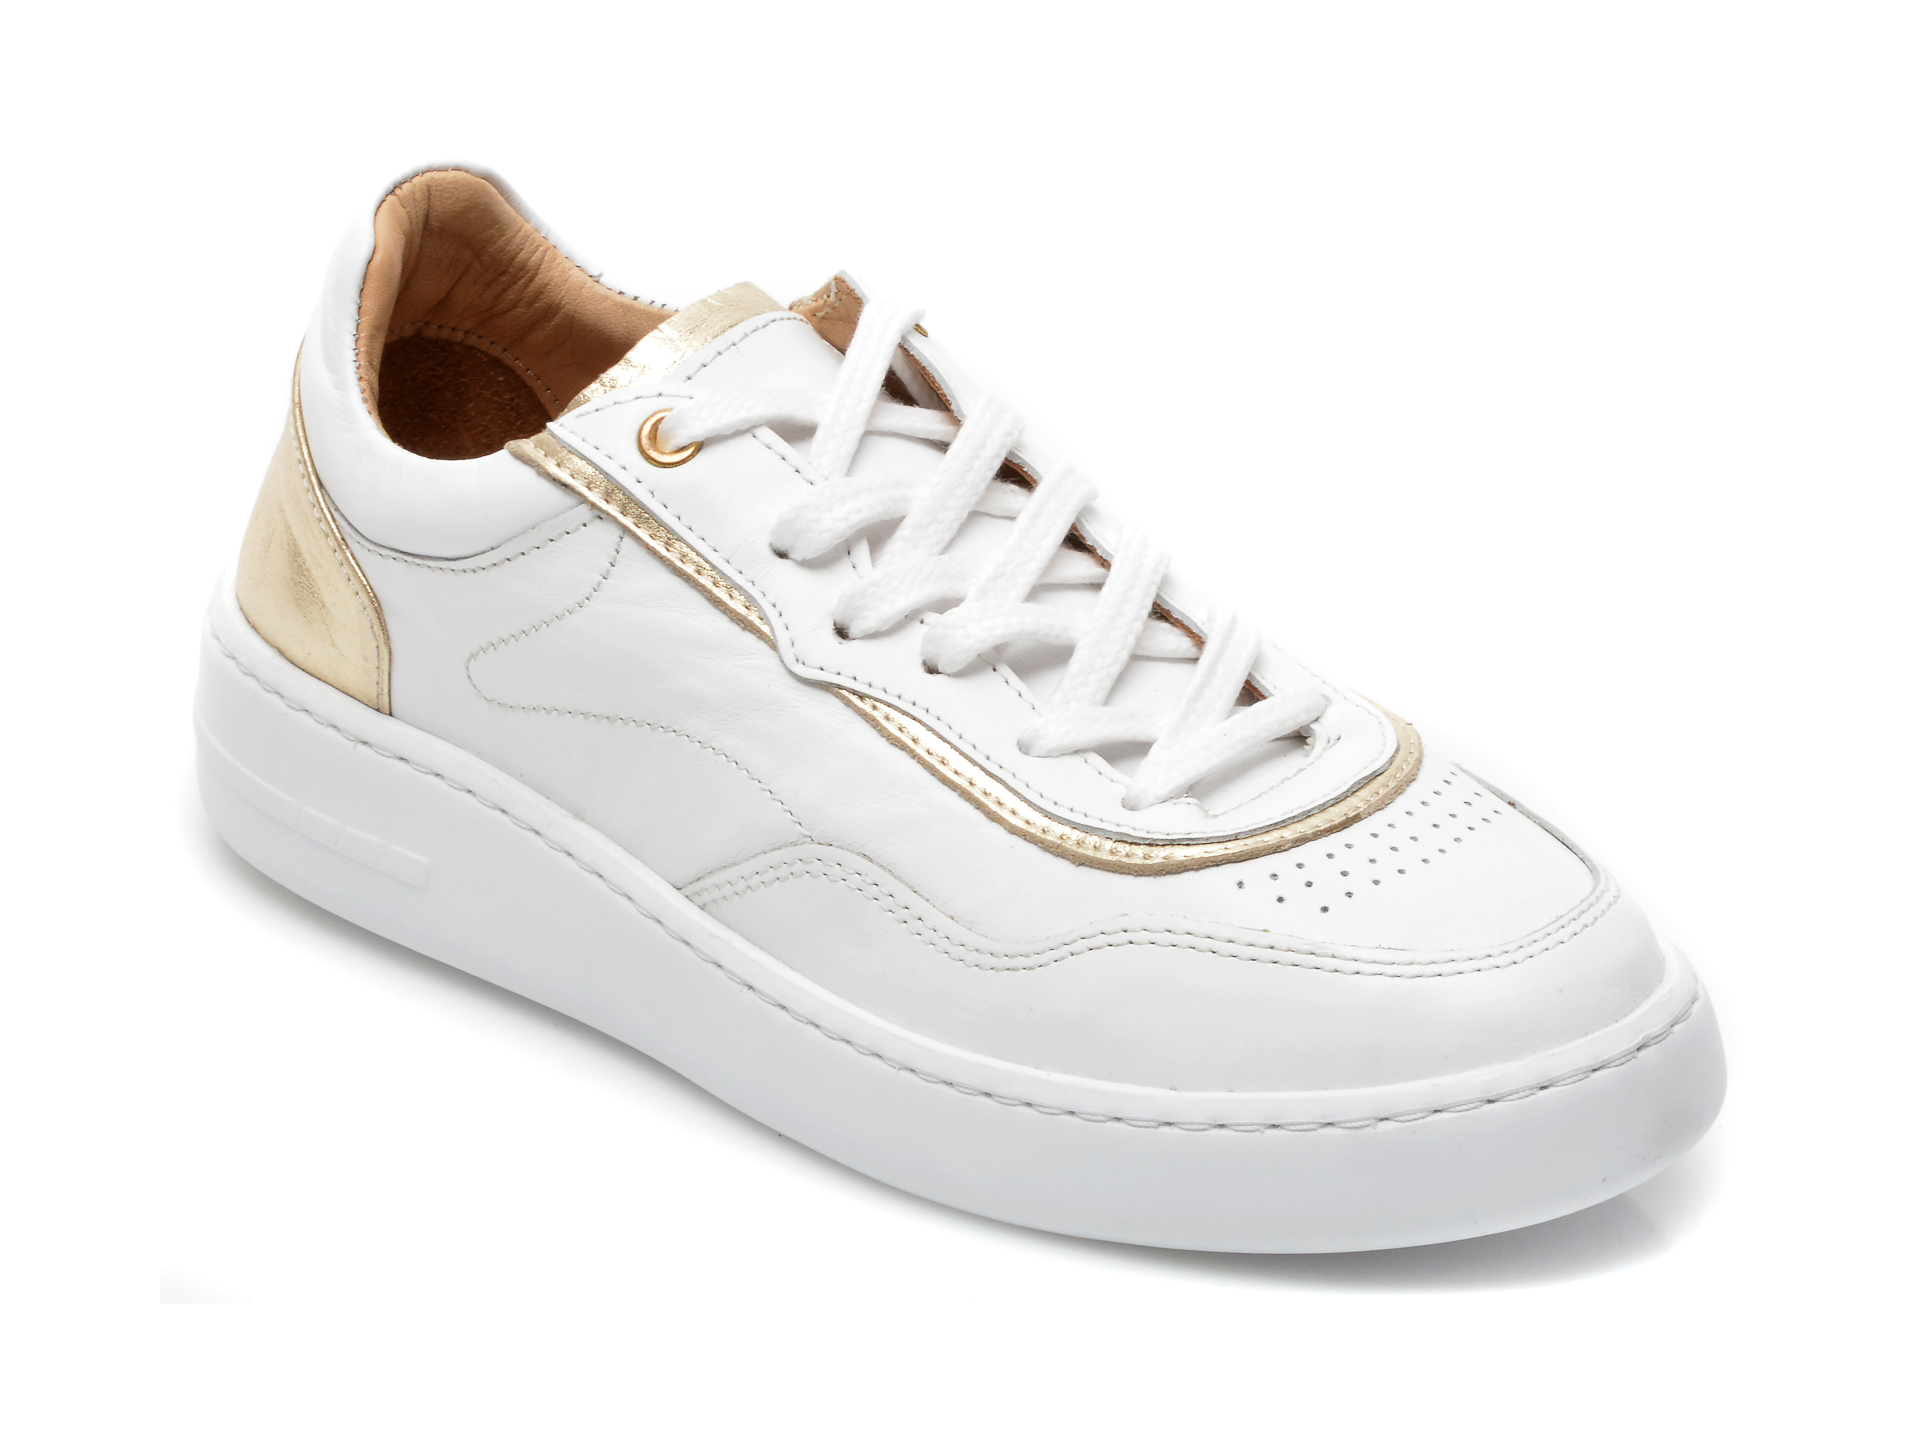 Pantofi FLAVIA PASSINI albi, 1110, din piele naturala Flavia Passini